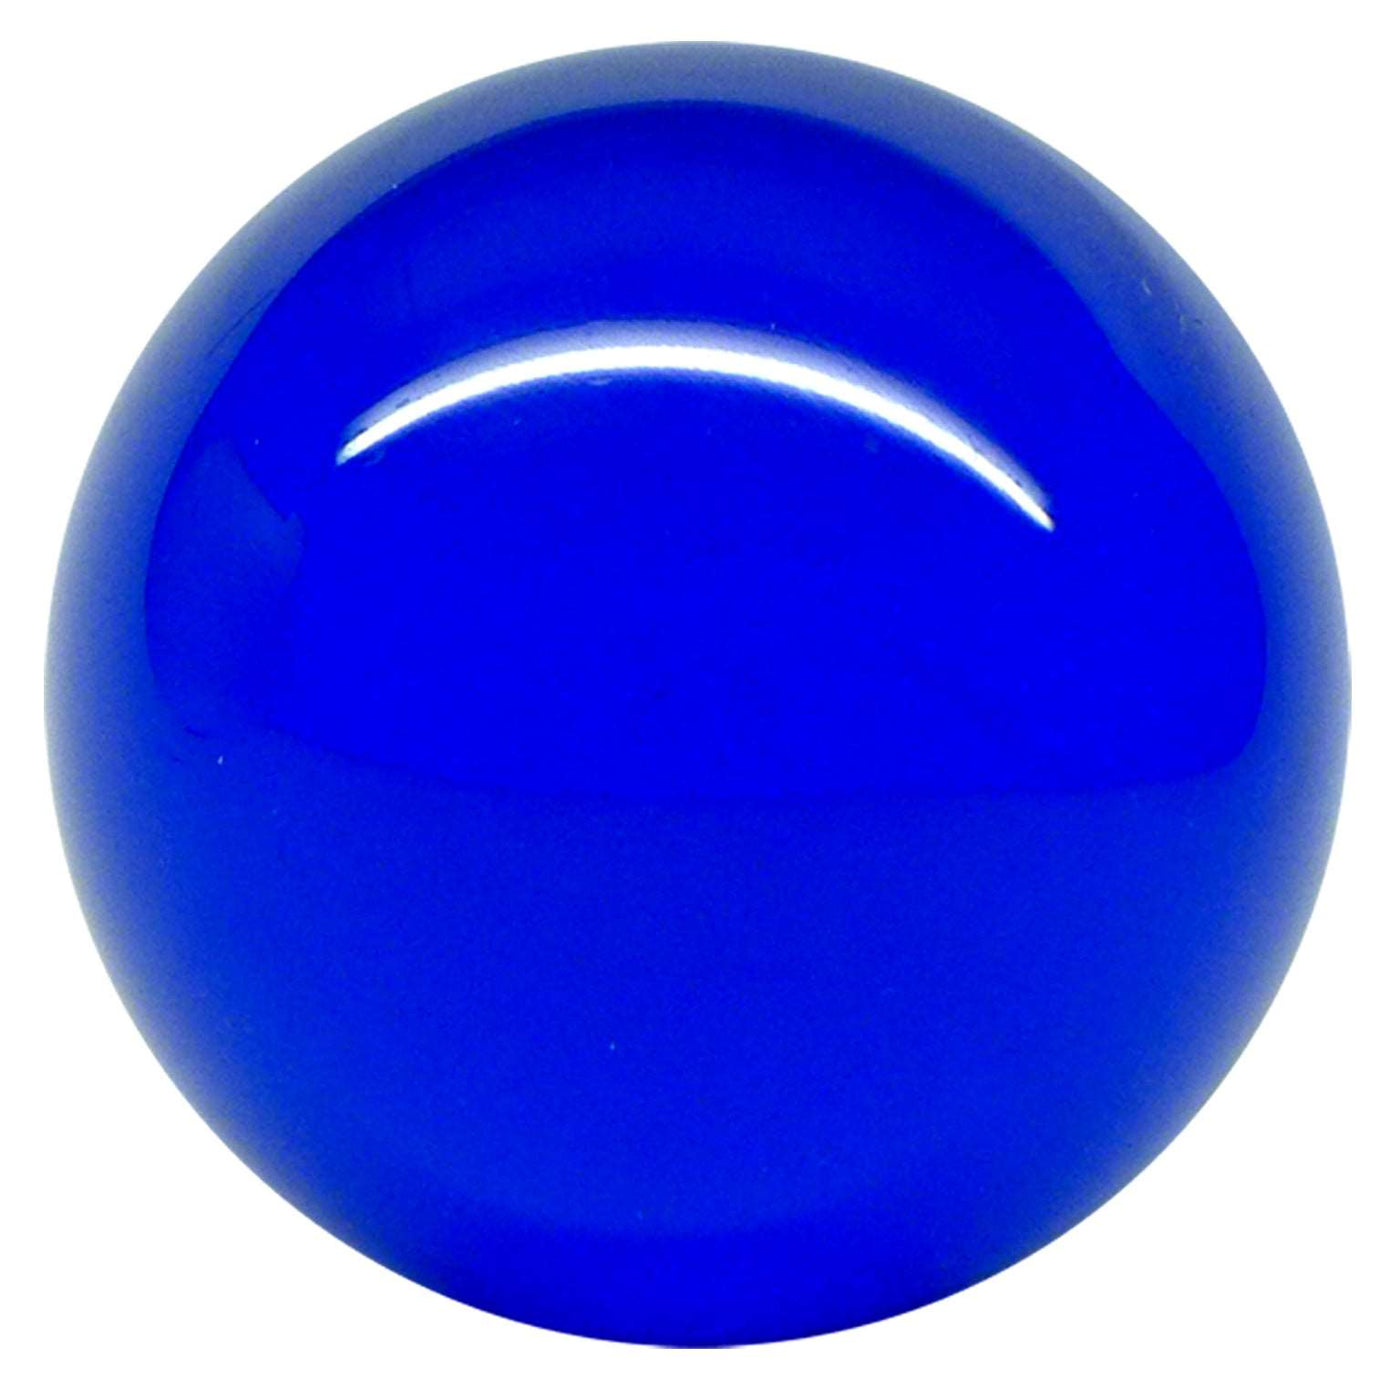 Balle de contact Acrylique Bleu Transparent 80mm 350g et étui de protection